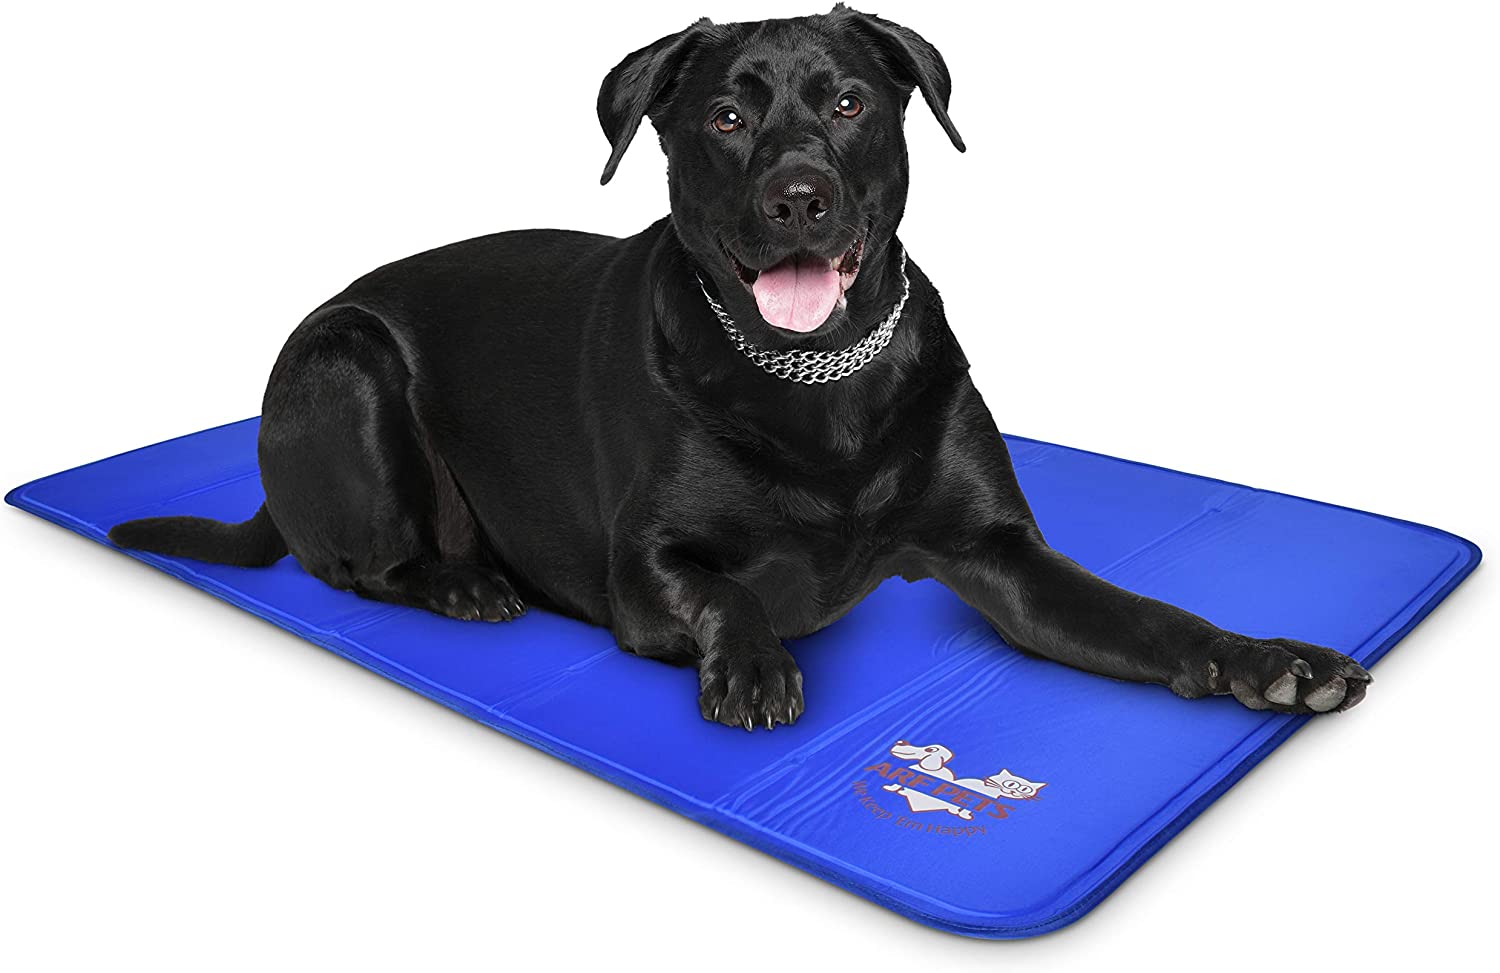 9. Arf Pets Dog Cooling Mat